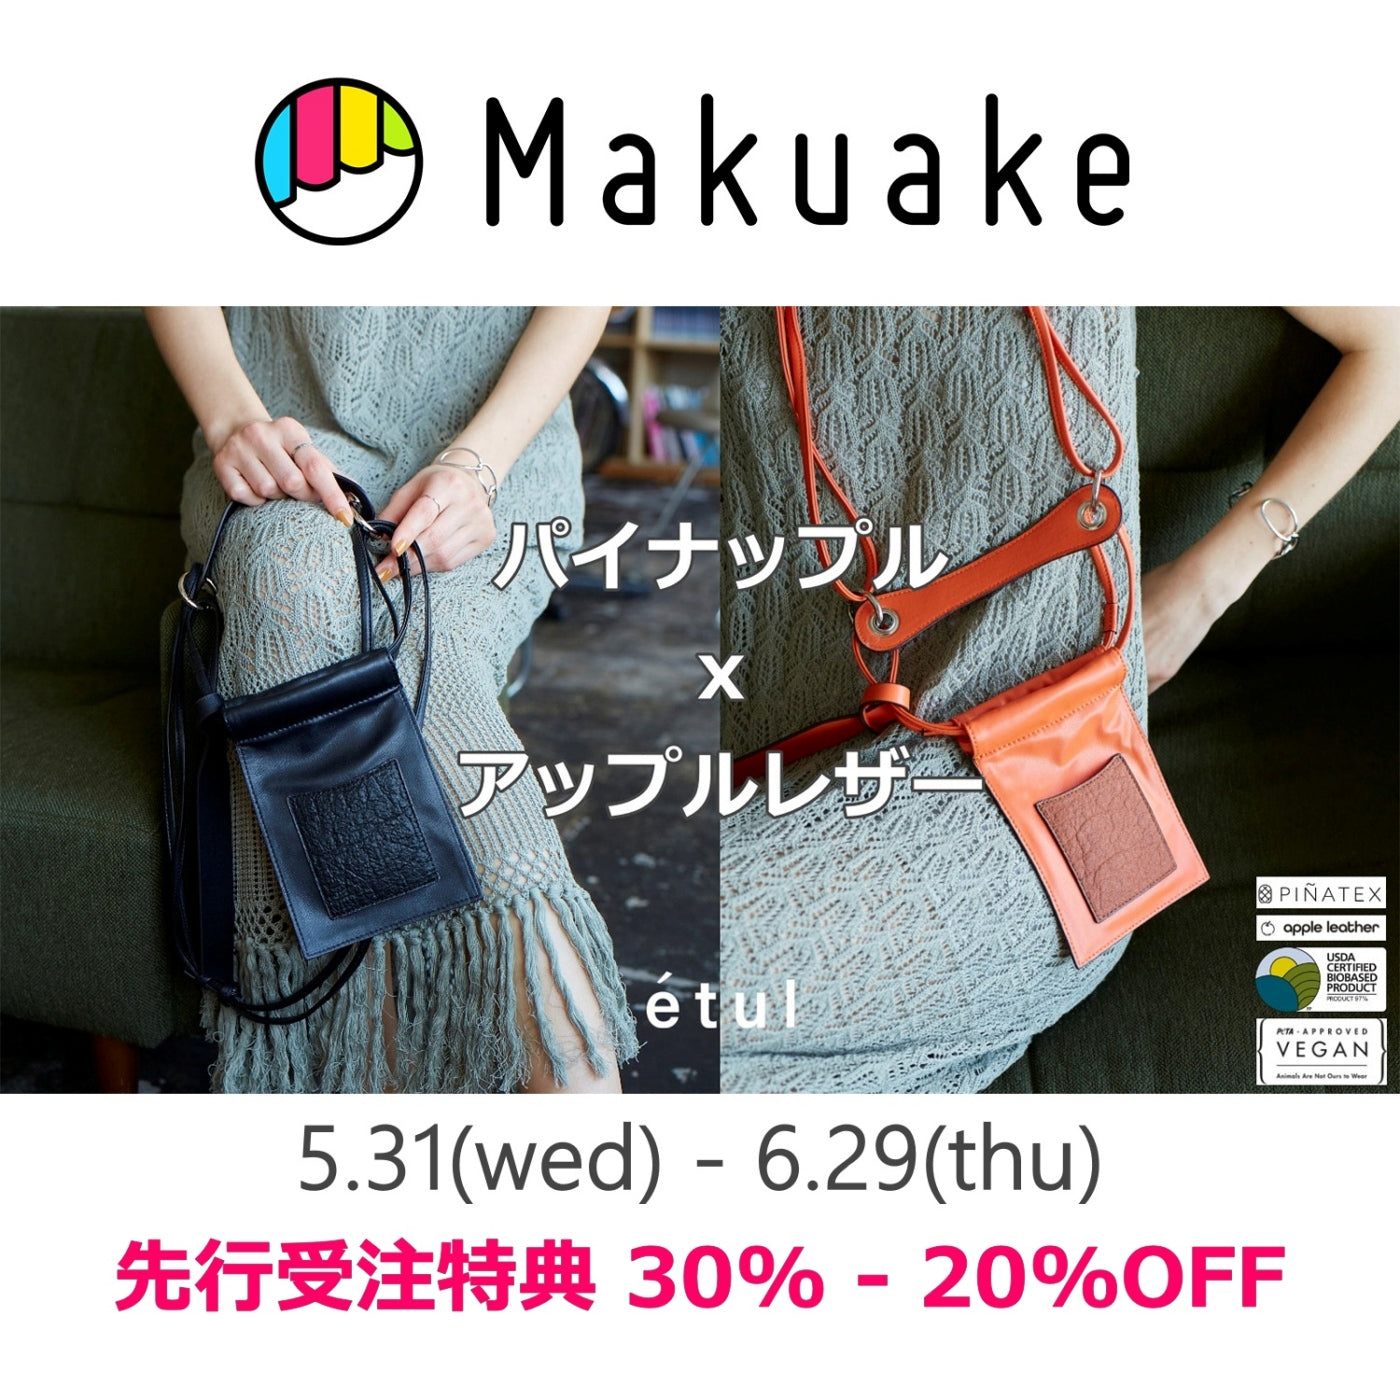 【makuake】etul 新作クラウドファンディング開始のお知らせ